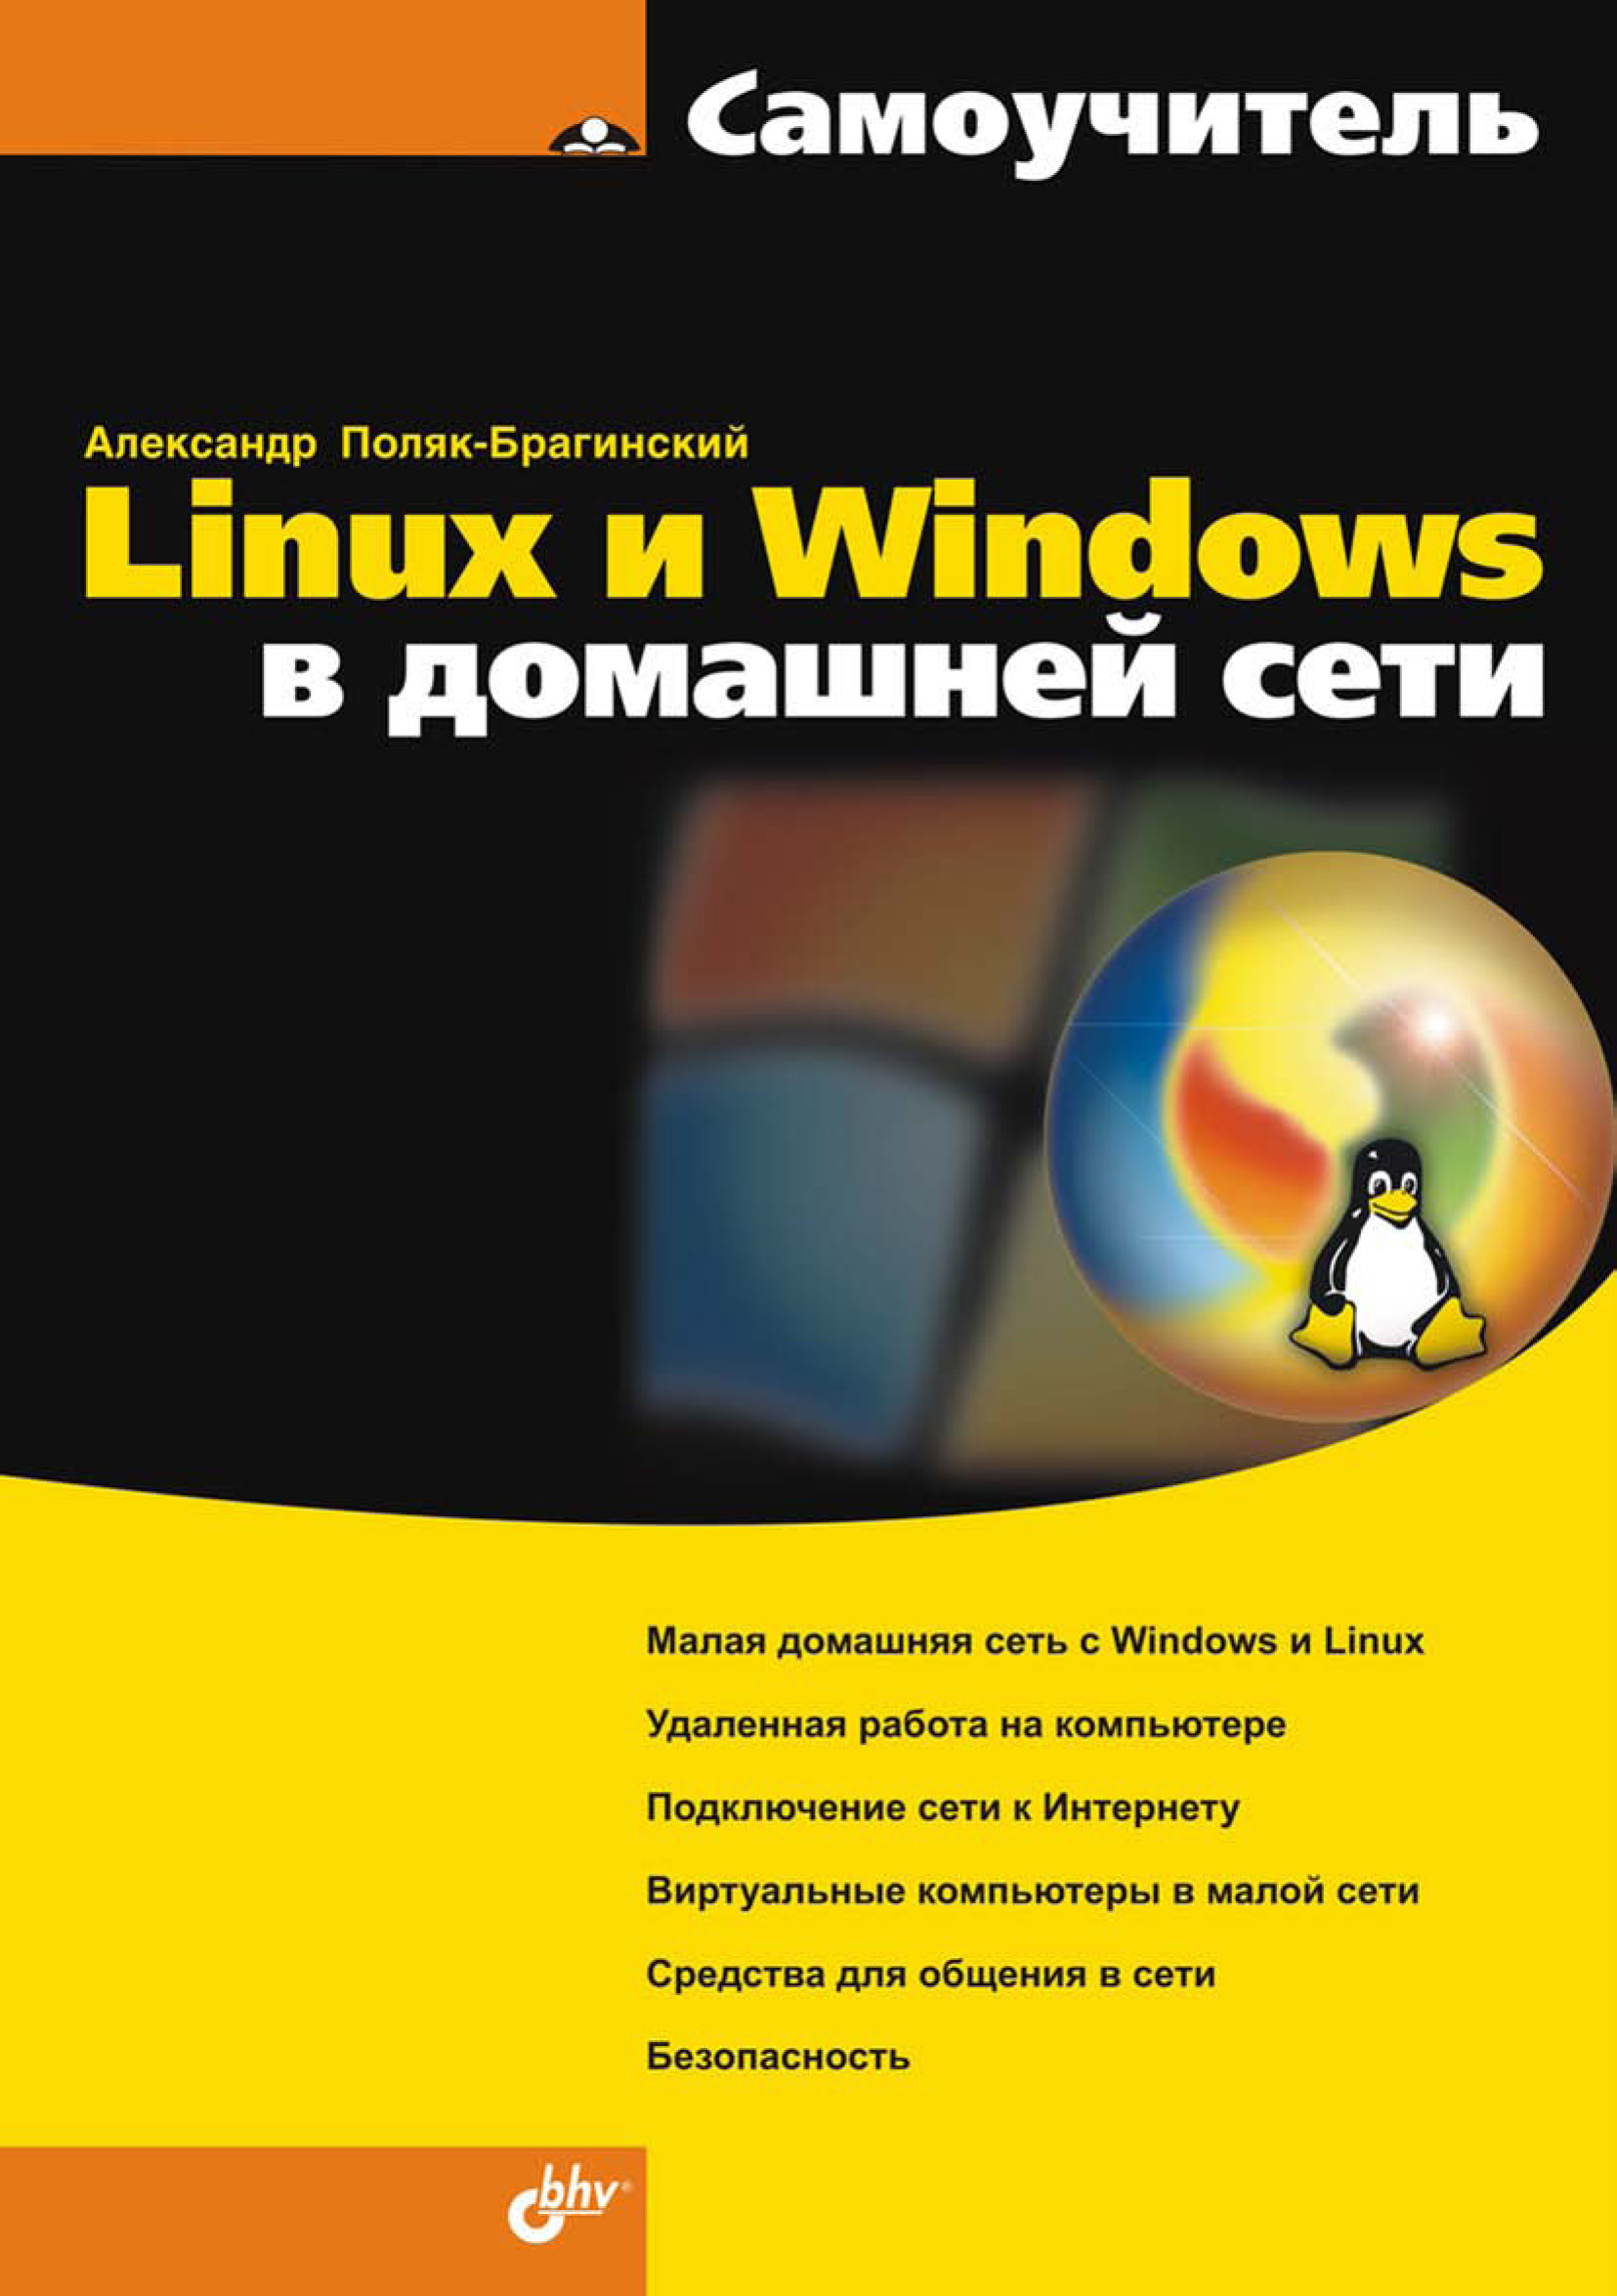 Книга Самоучитель (BHV) Linux и Windows в домашней сети созданная А. В. Поляк-Брагинский может относится к жанру компьютерное железо, ОС и сети, программы, самоучители. Стоимость электронной книги Linux и Windows в домашней сети с идентификатором 6991137 составляет 127.00 руб.